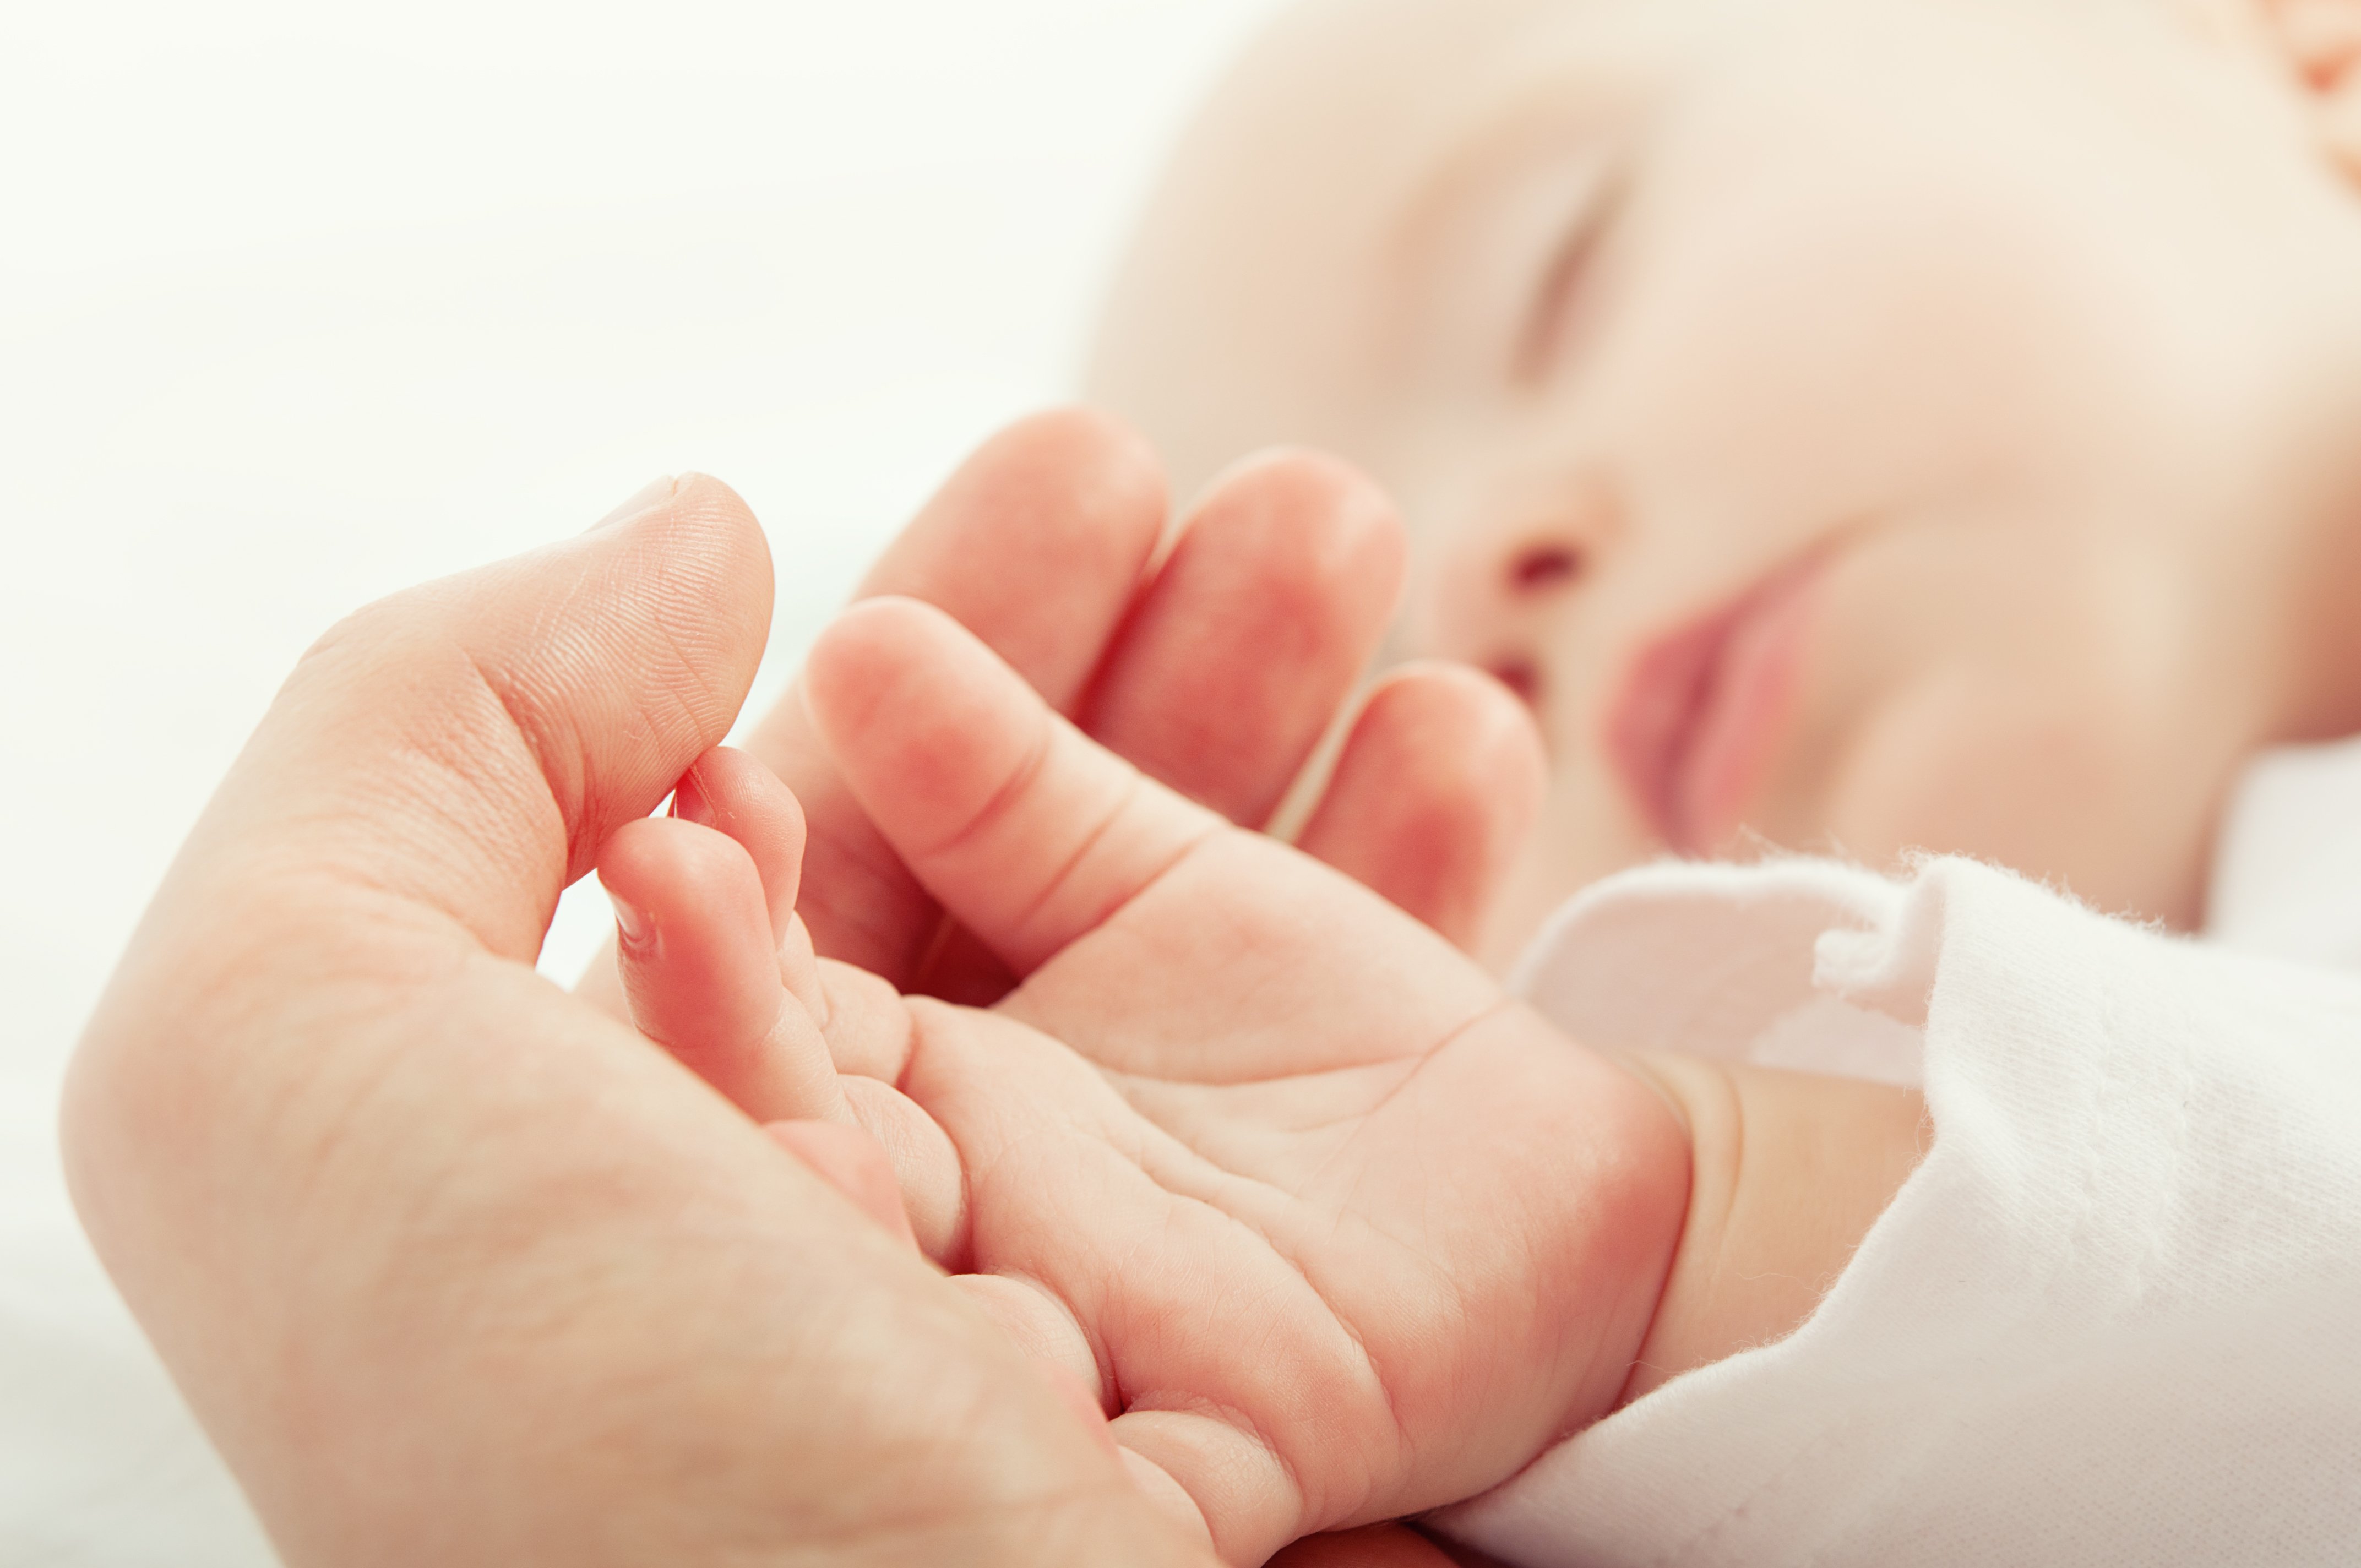 Bebé recién nacido / Imagen tomada de: Shutterstock